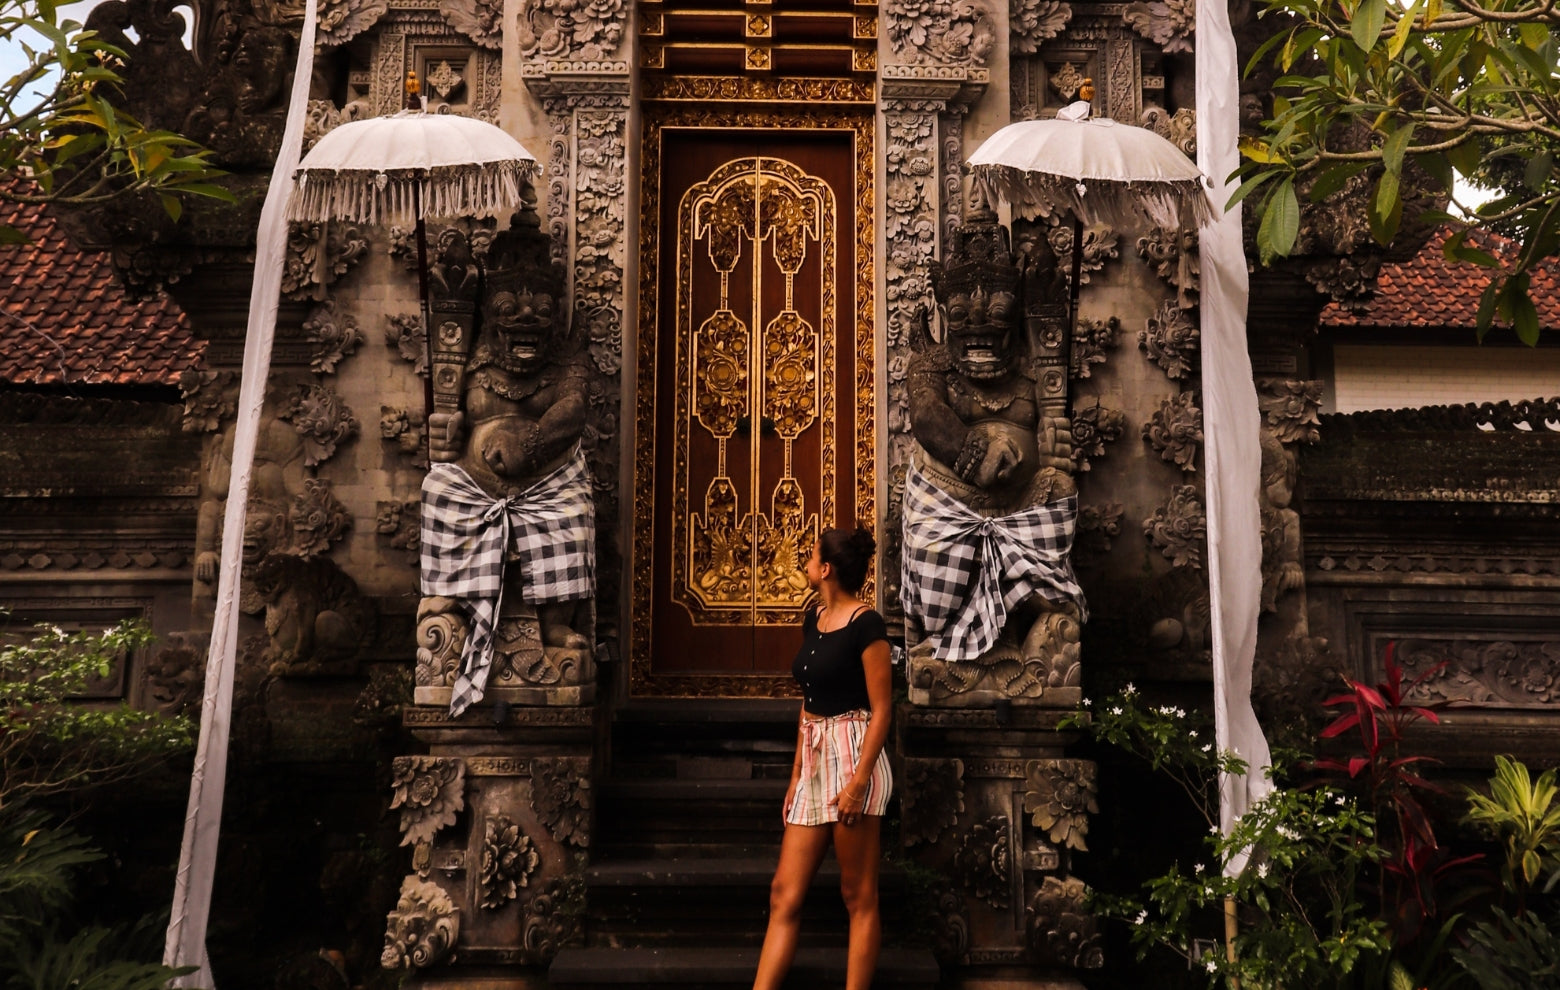 Voyage bien-être : Yoga et Spiritualité à Bali